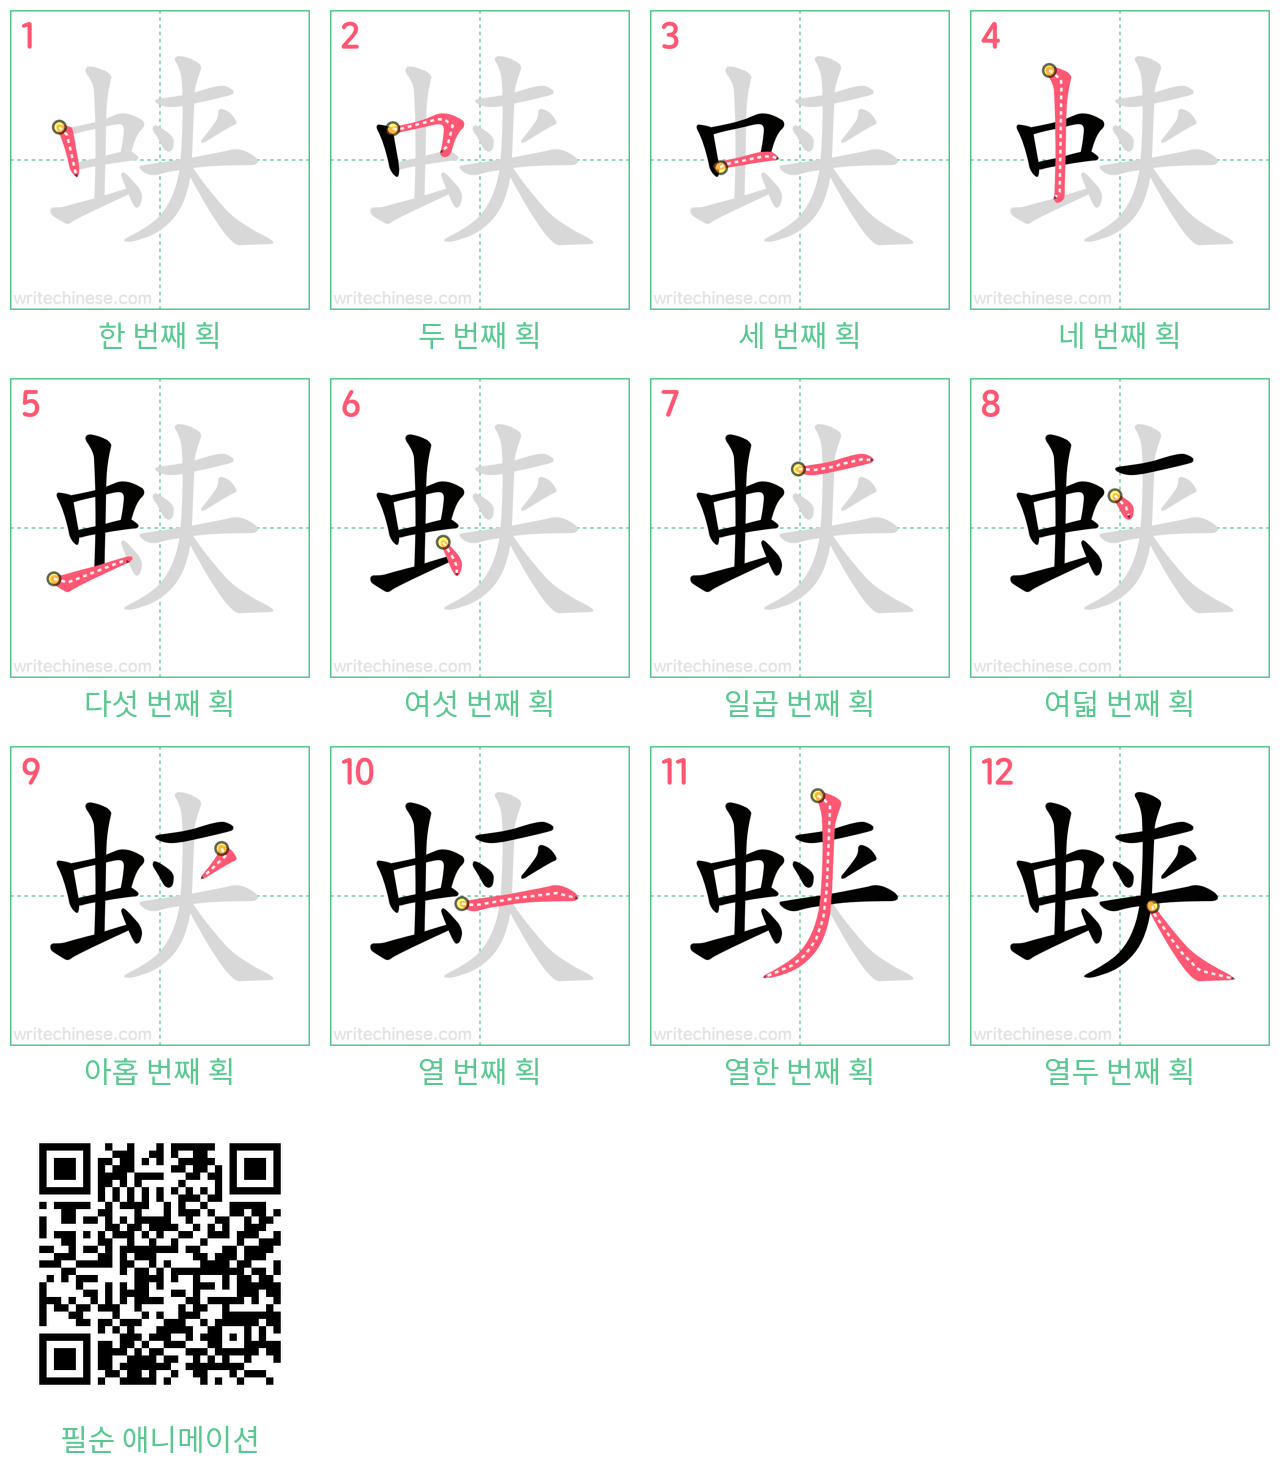 蛱 step-by-step stroke order diagrams